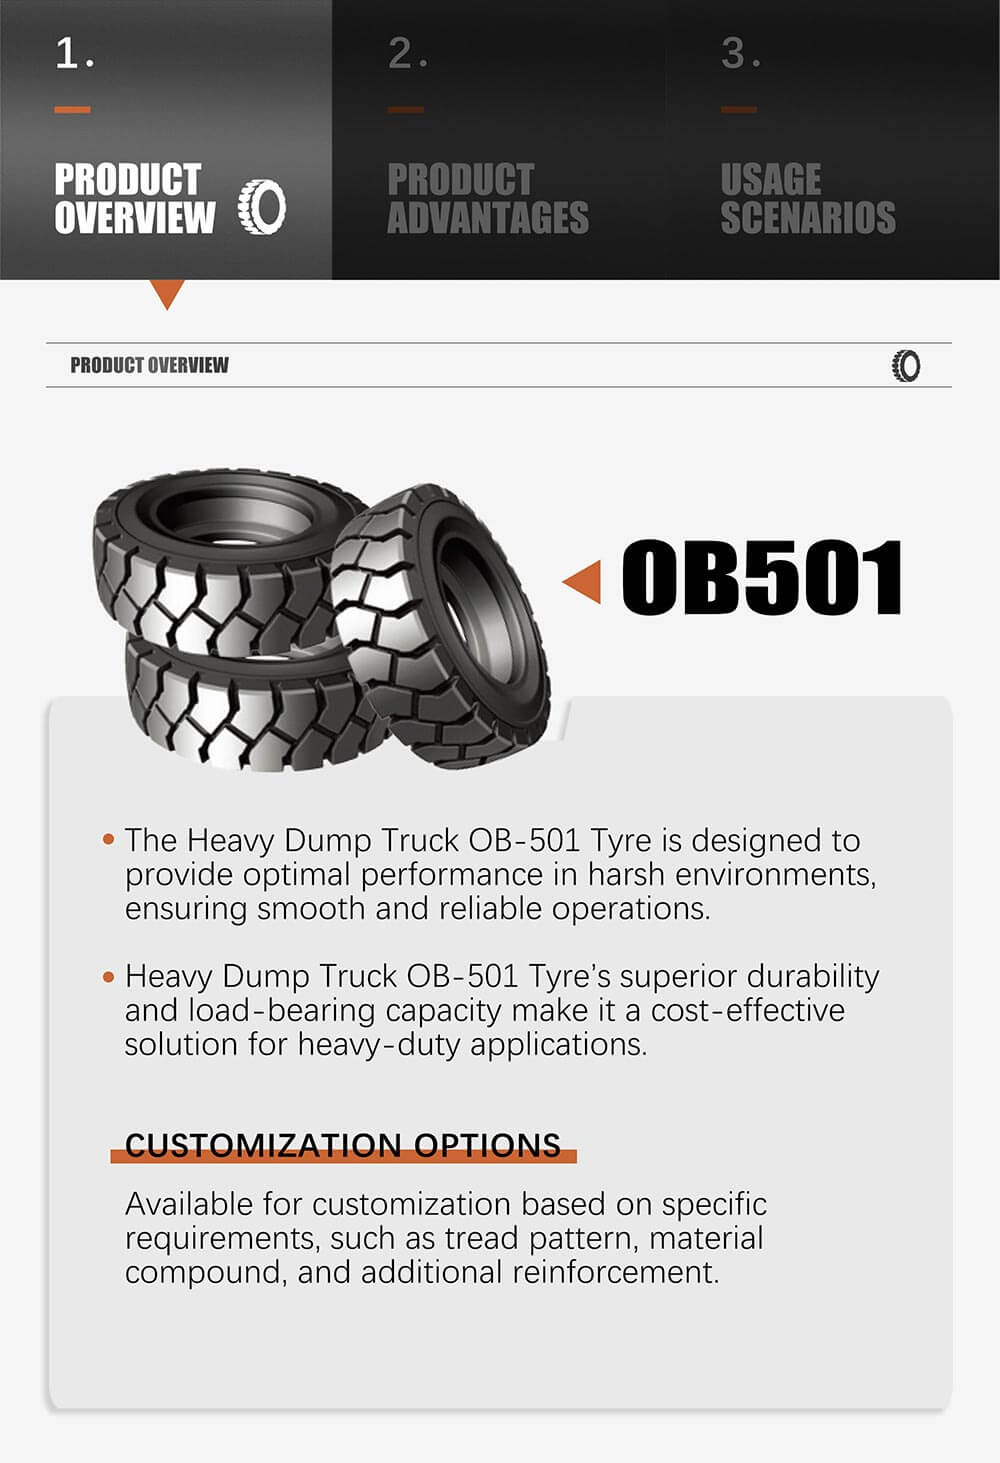 Heavy Dump Truck OB-501 Tyre